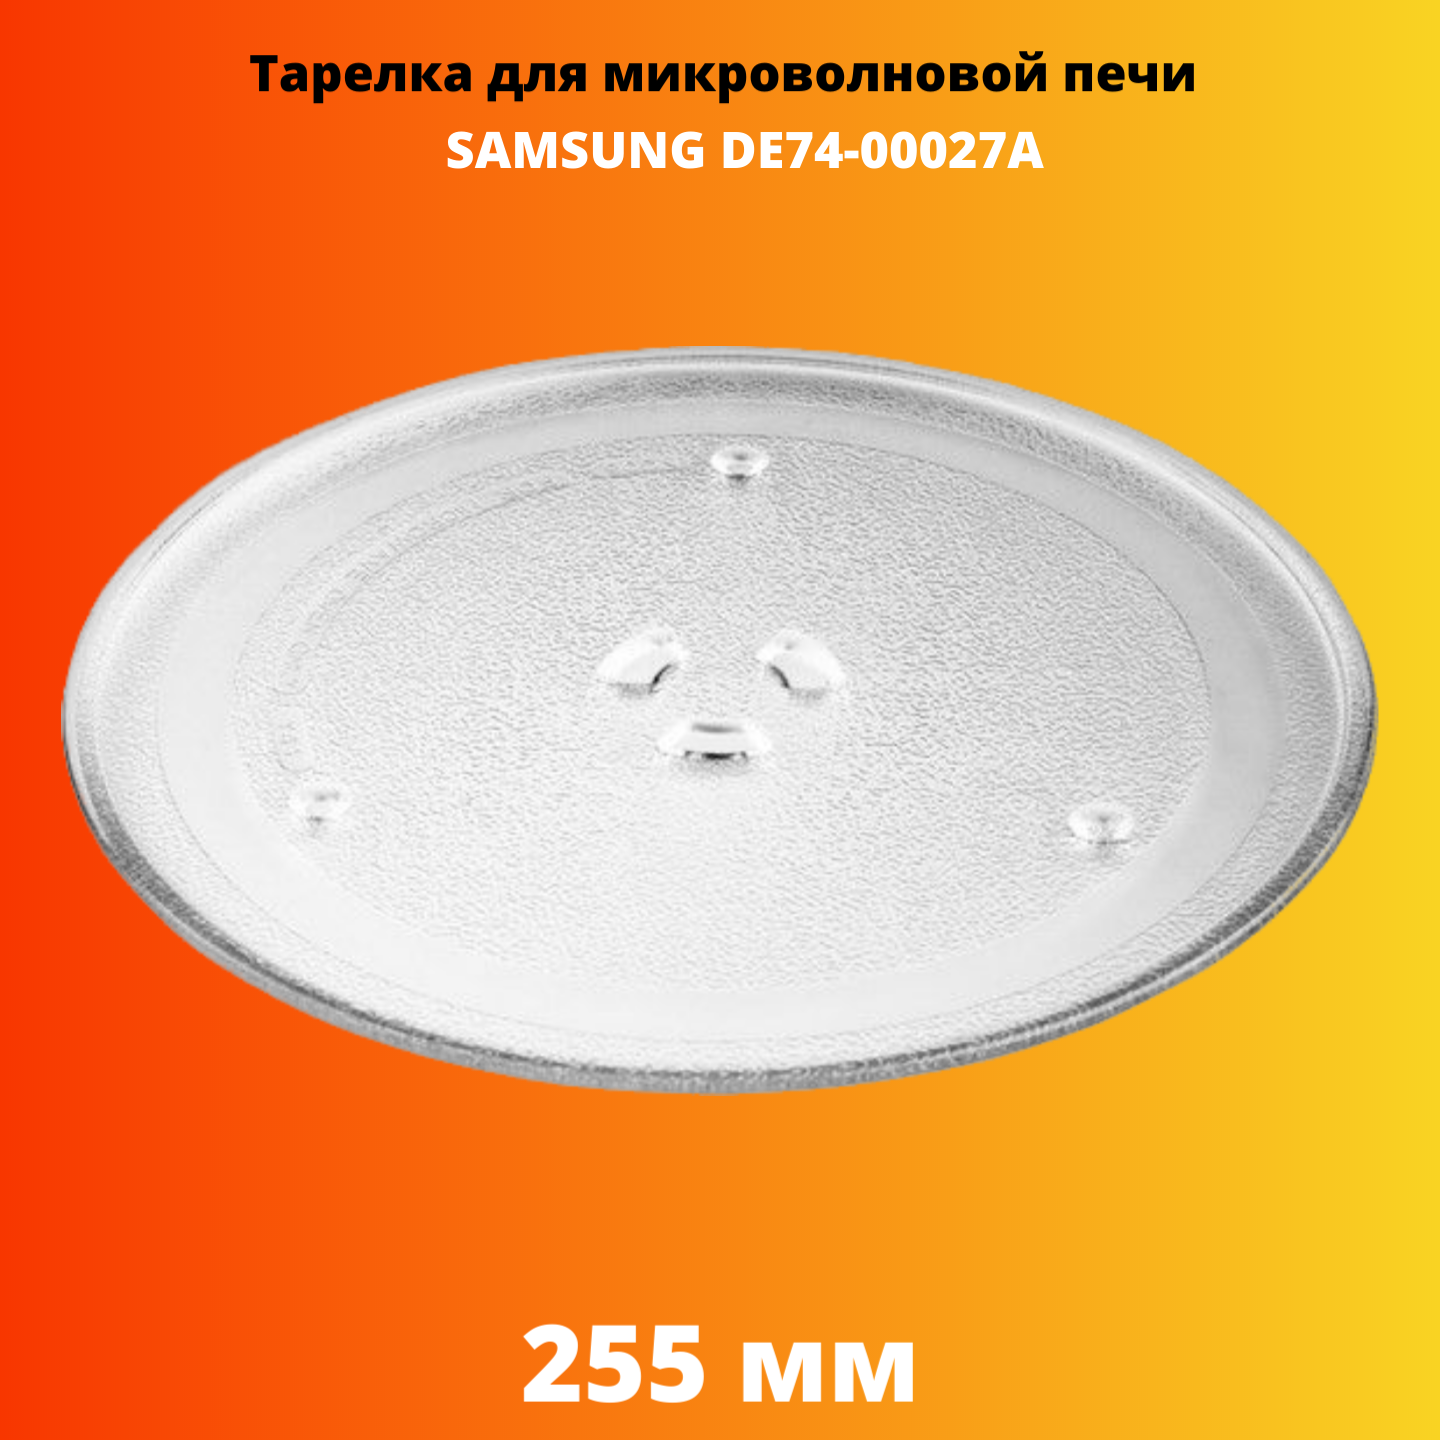 Тарелка для микроволновой печи Electriclight DE74-00027A тарелка для свч onkron samsung de74 00027a 25 5см